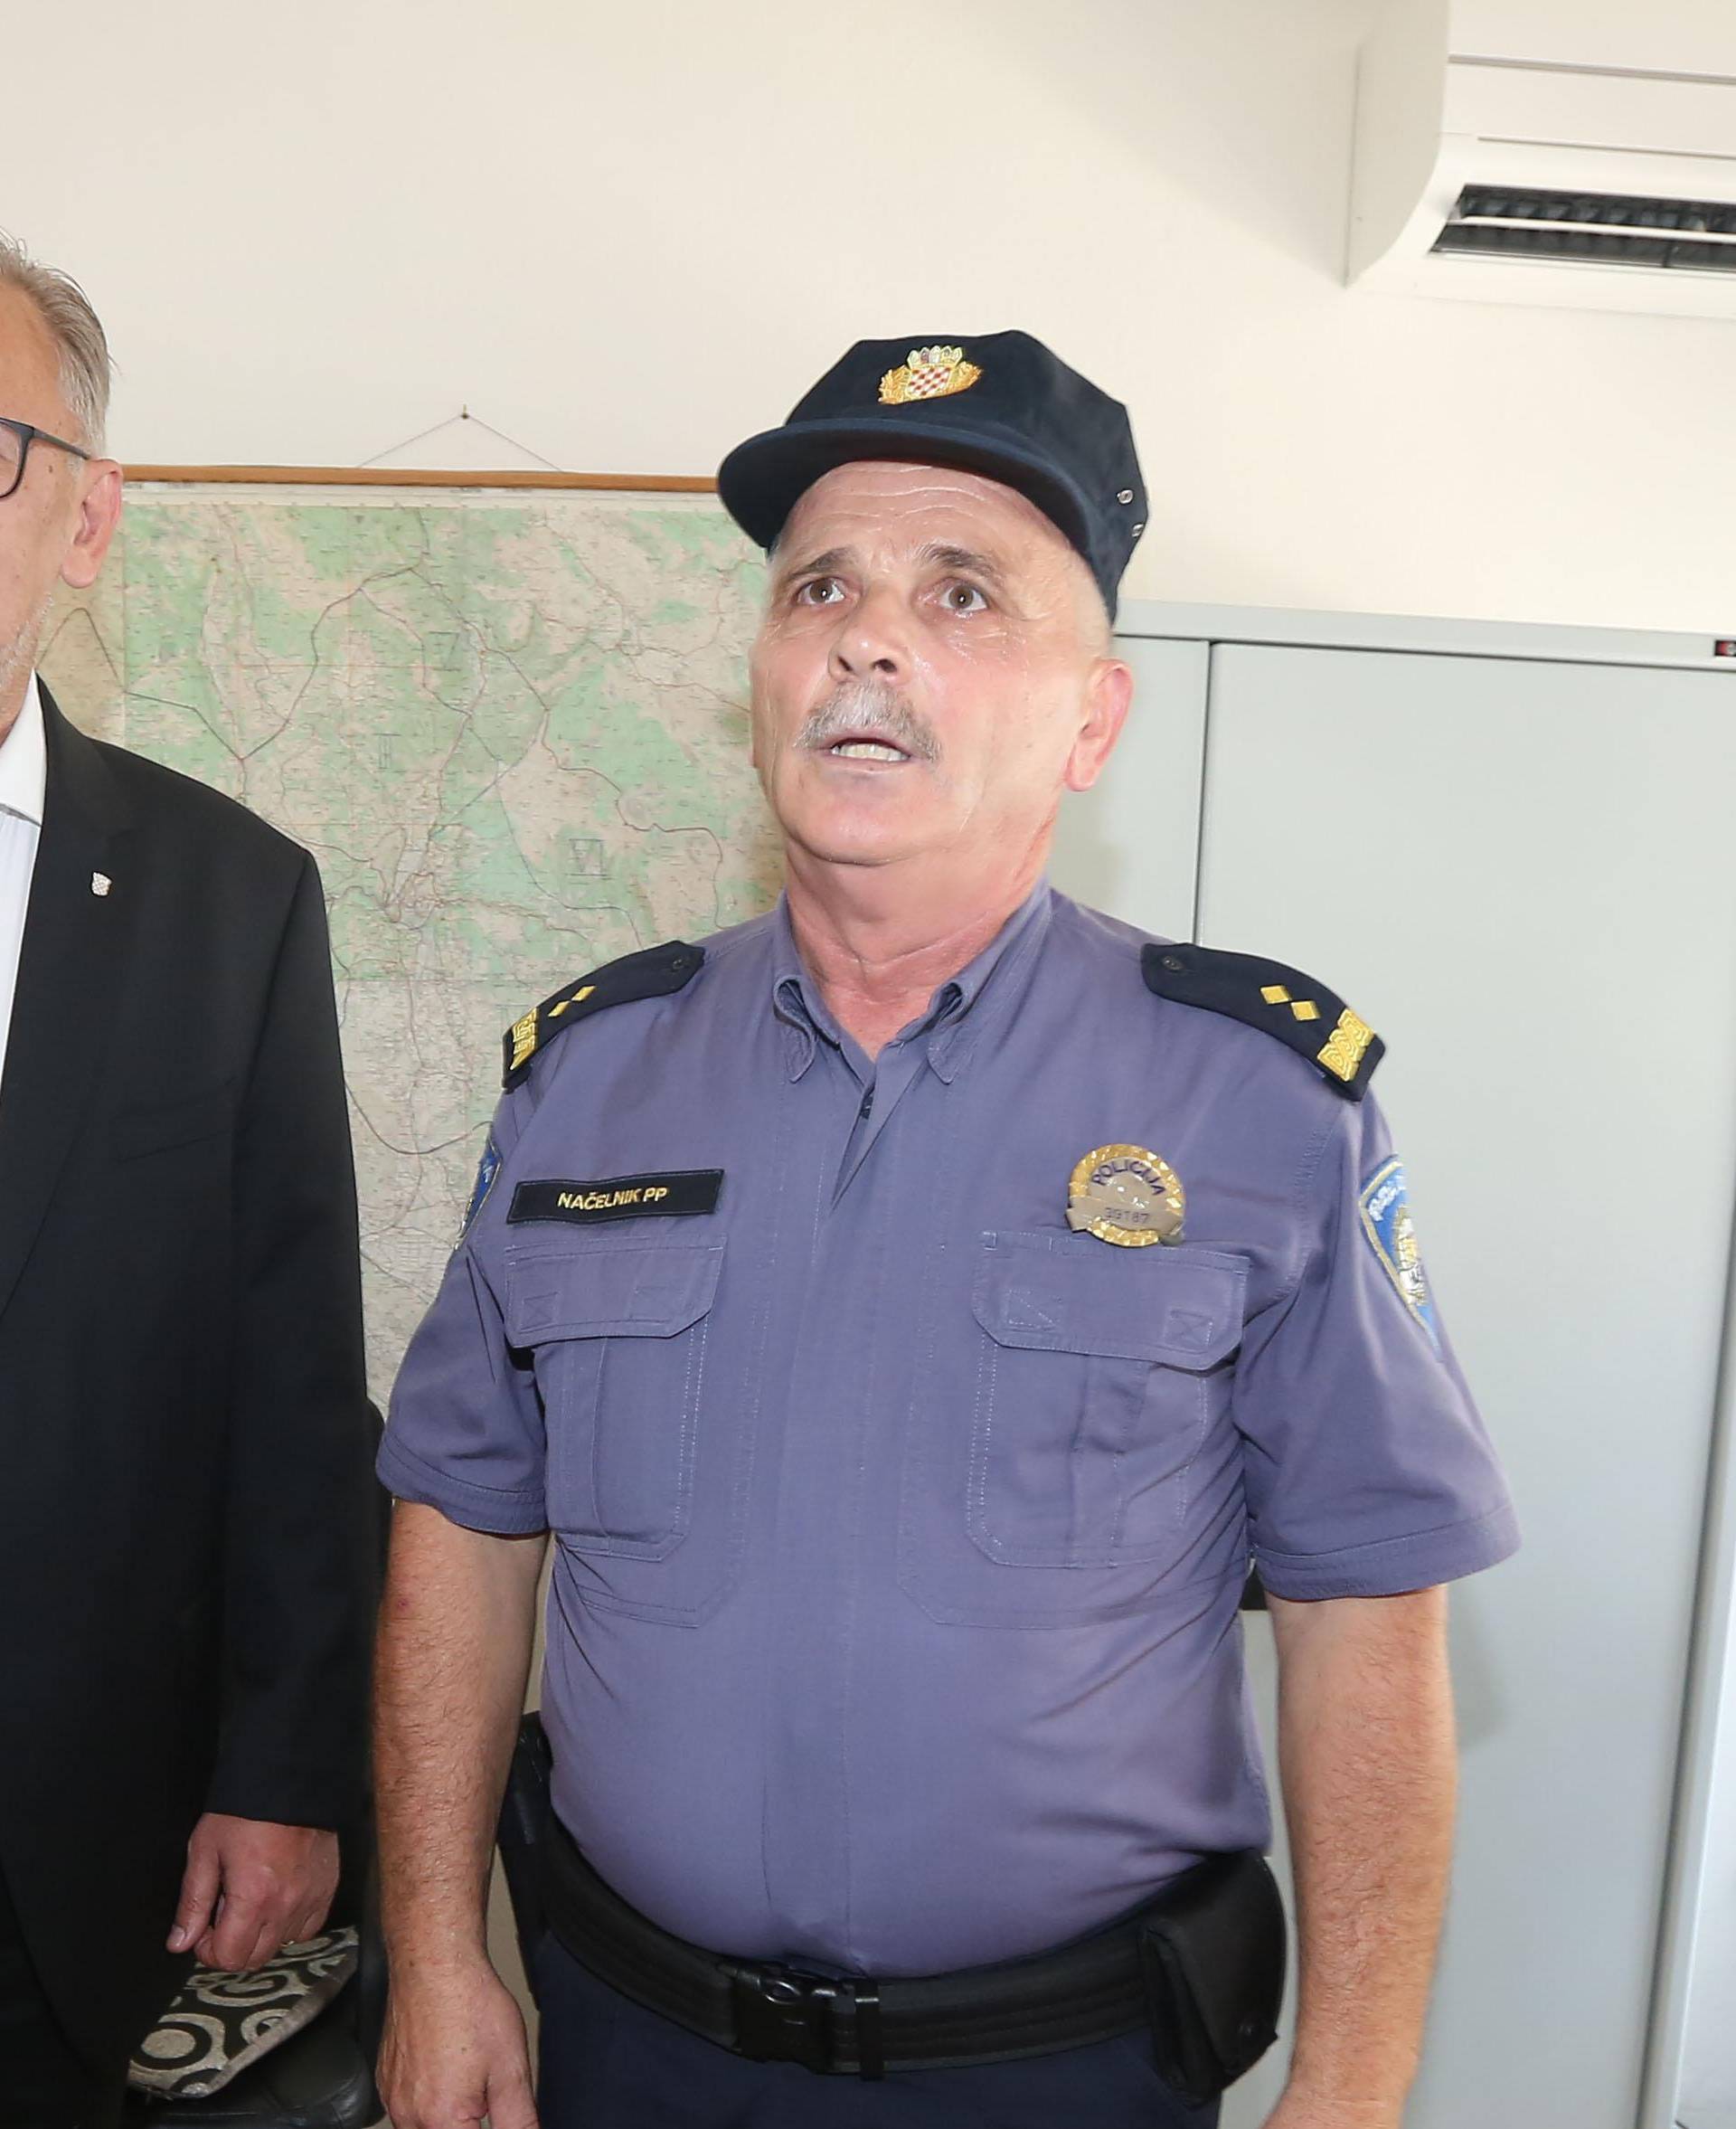 Ministar BoÅ¾inoviÄ u obilasku novoureÄenih prostorija Policijske postaje Knin